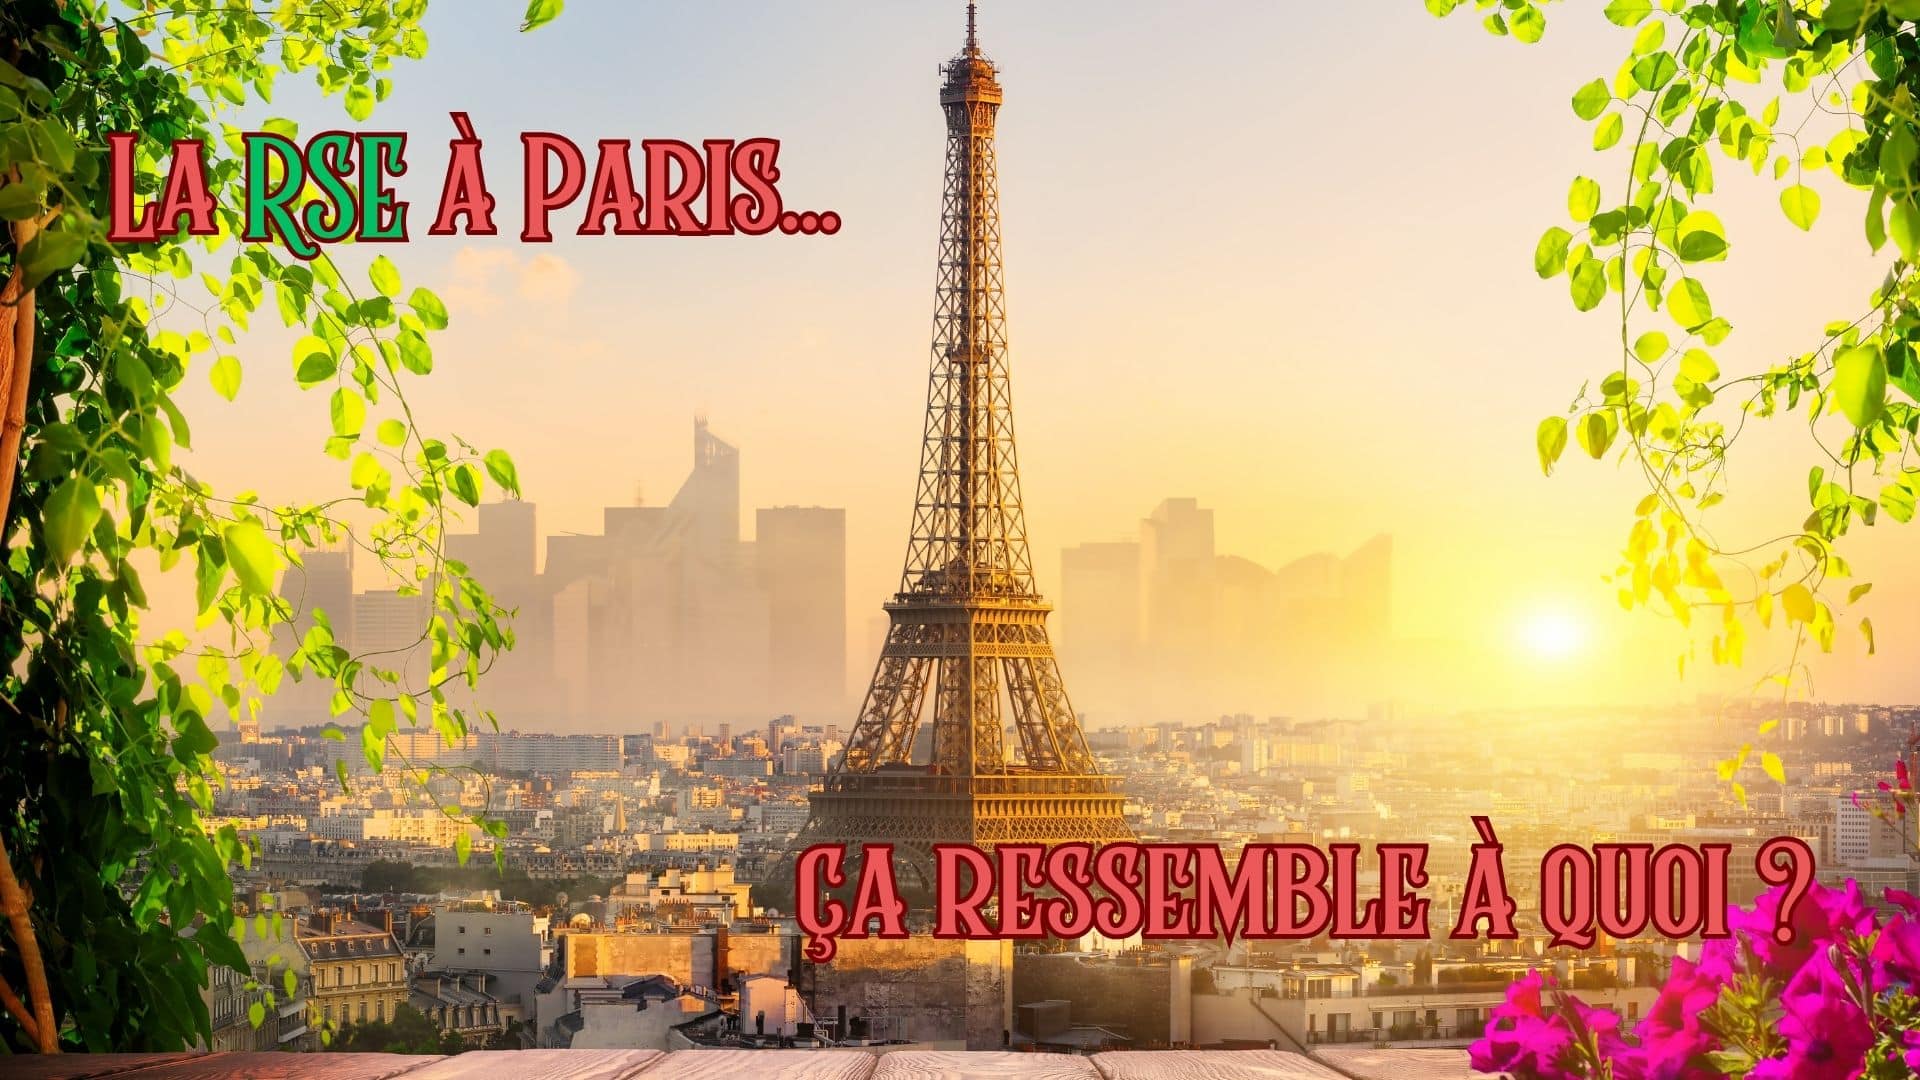 Illustration de l'article " La RSE à Paris", Responsabilité sociétale des entreprises